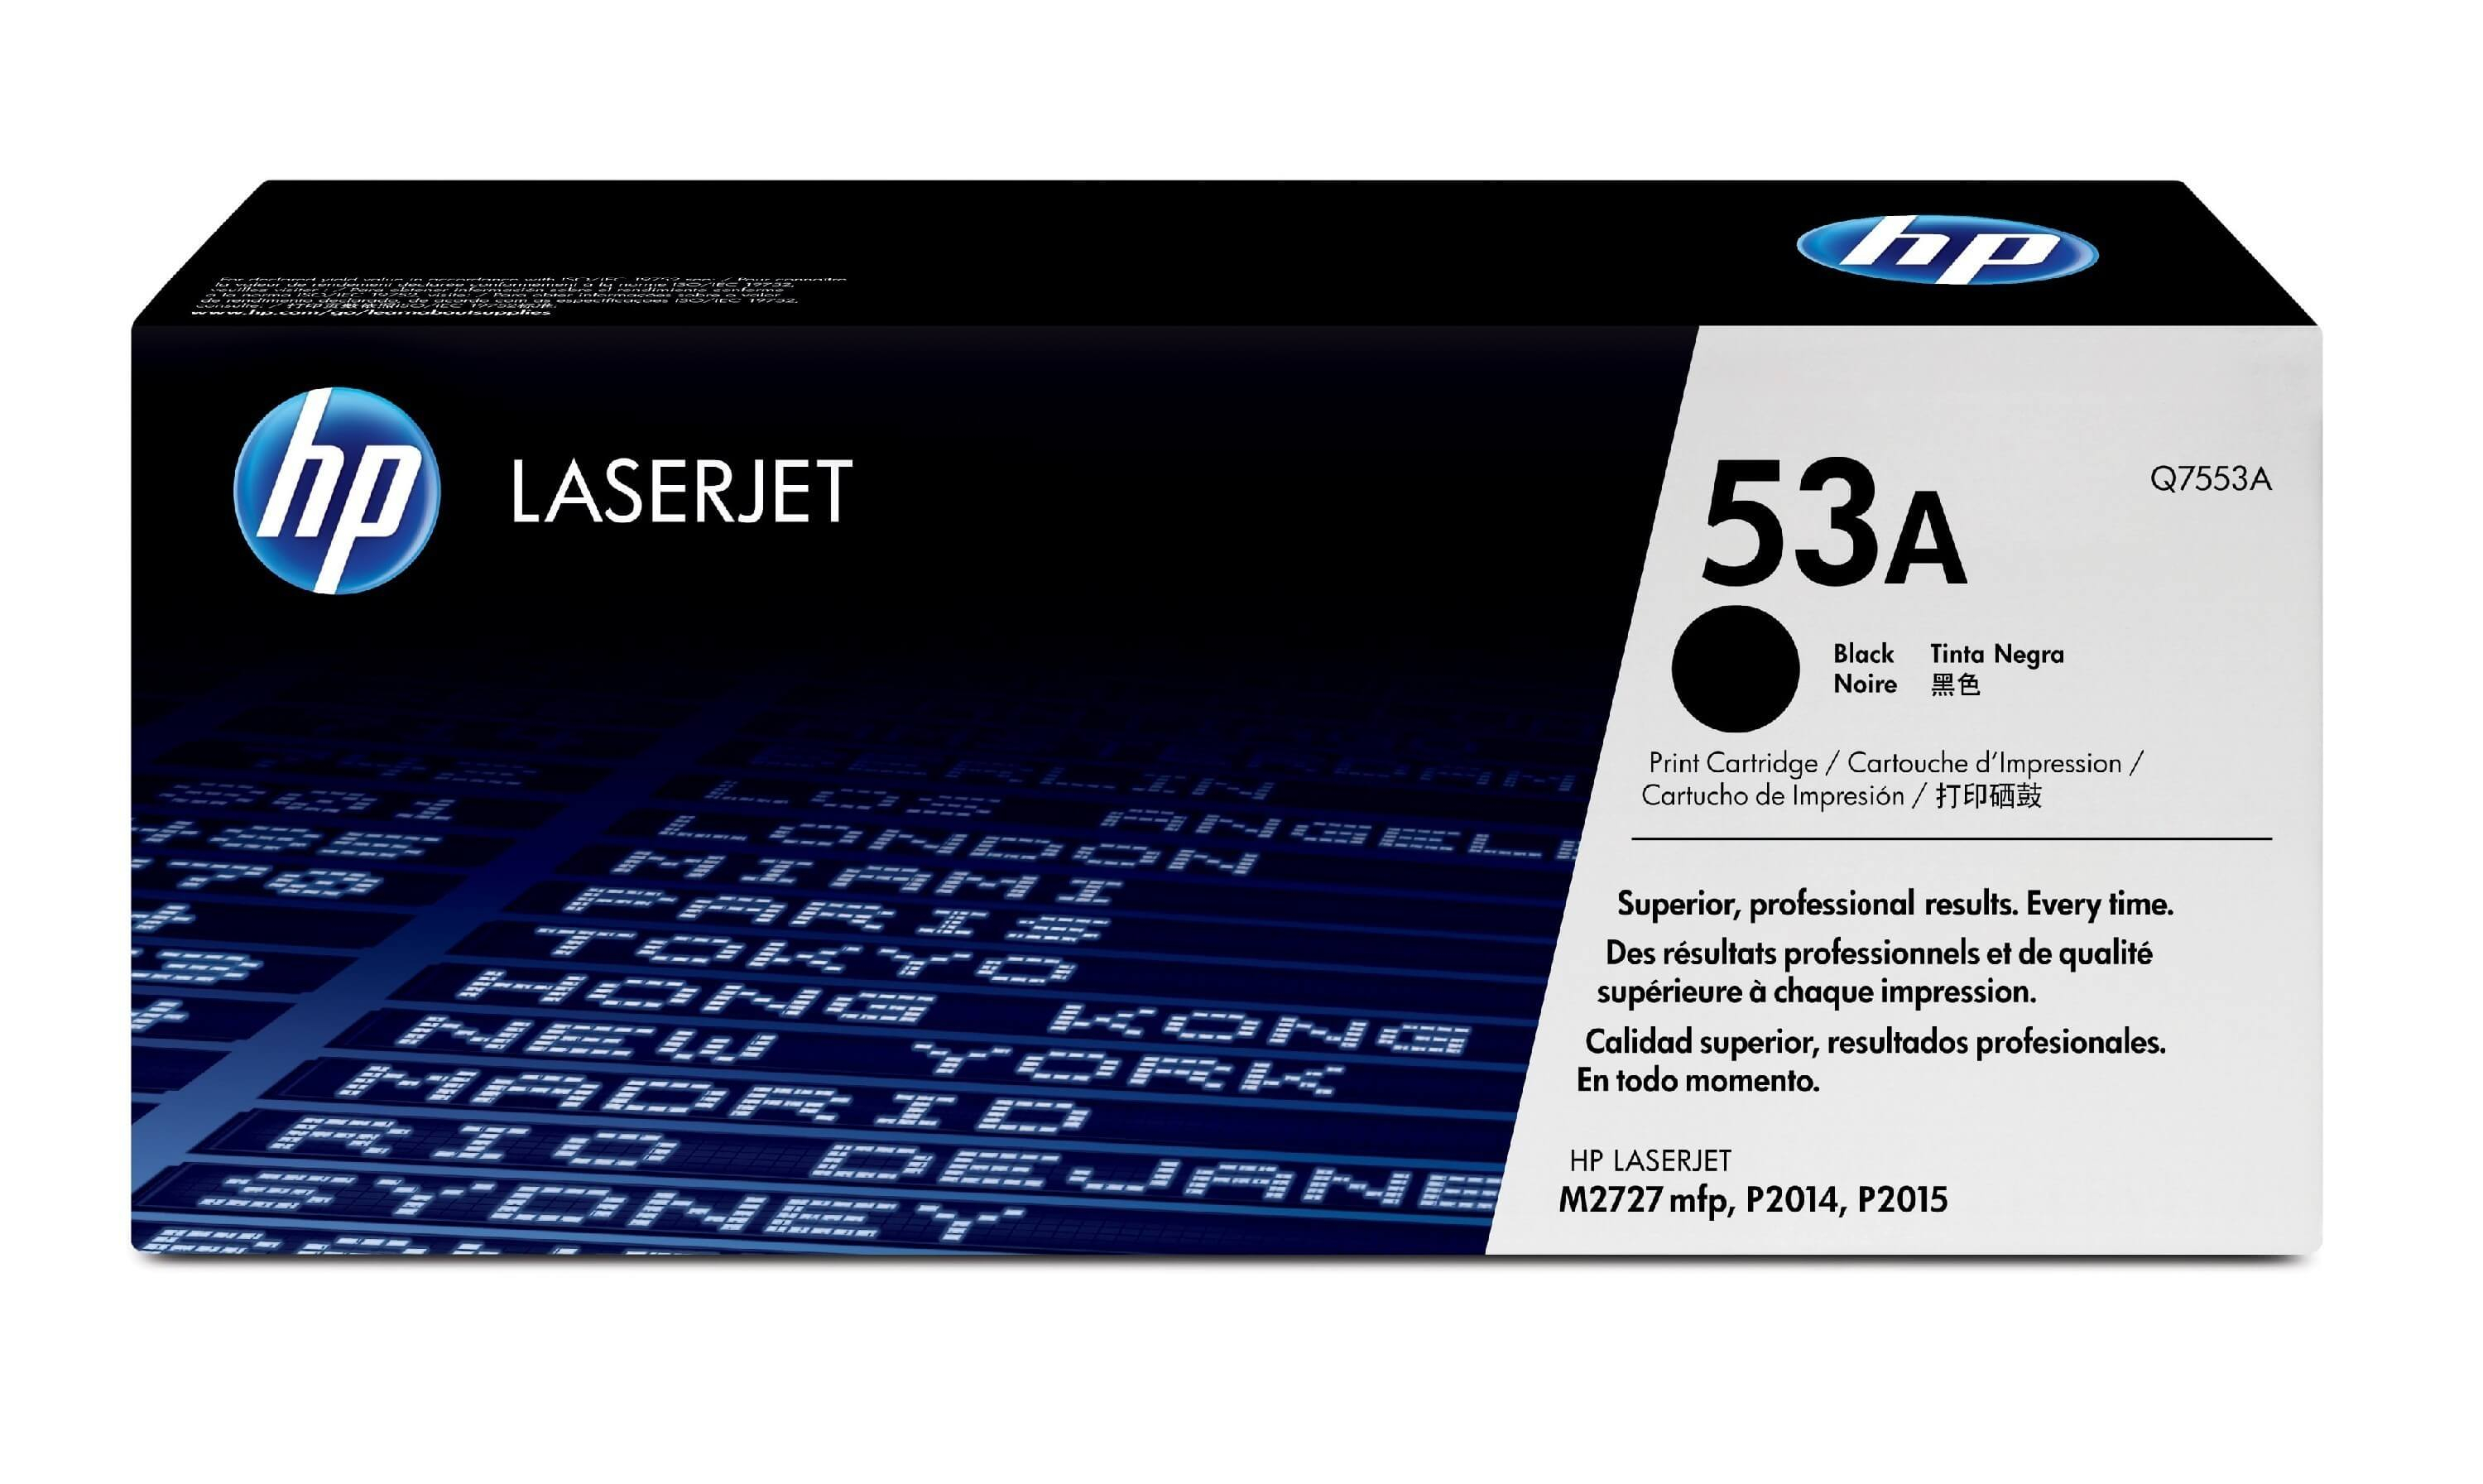 Original Toner HP LaserJet Professional P 2015 dn (Q7553A / 53A) Schwarz